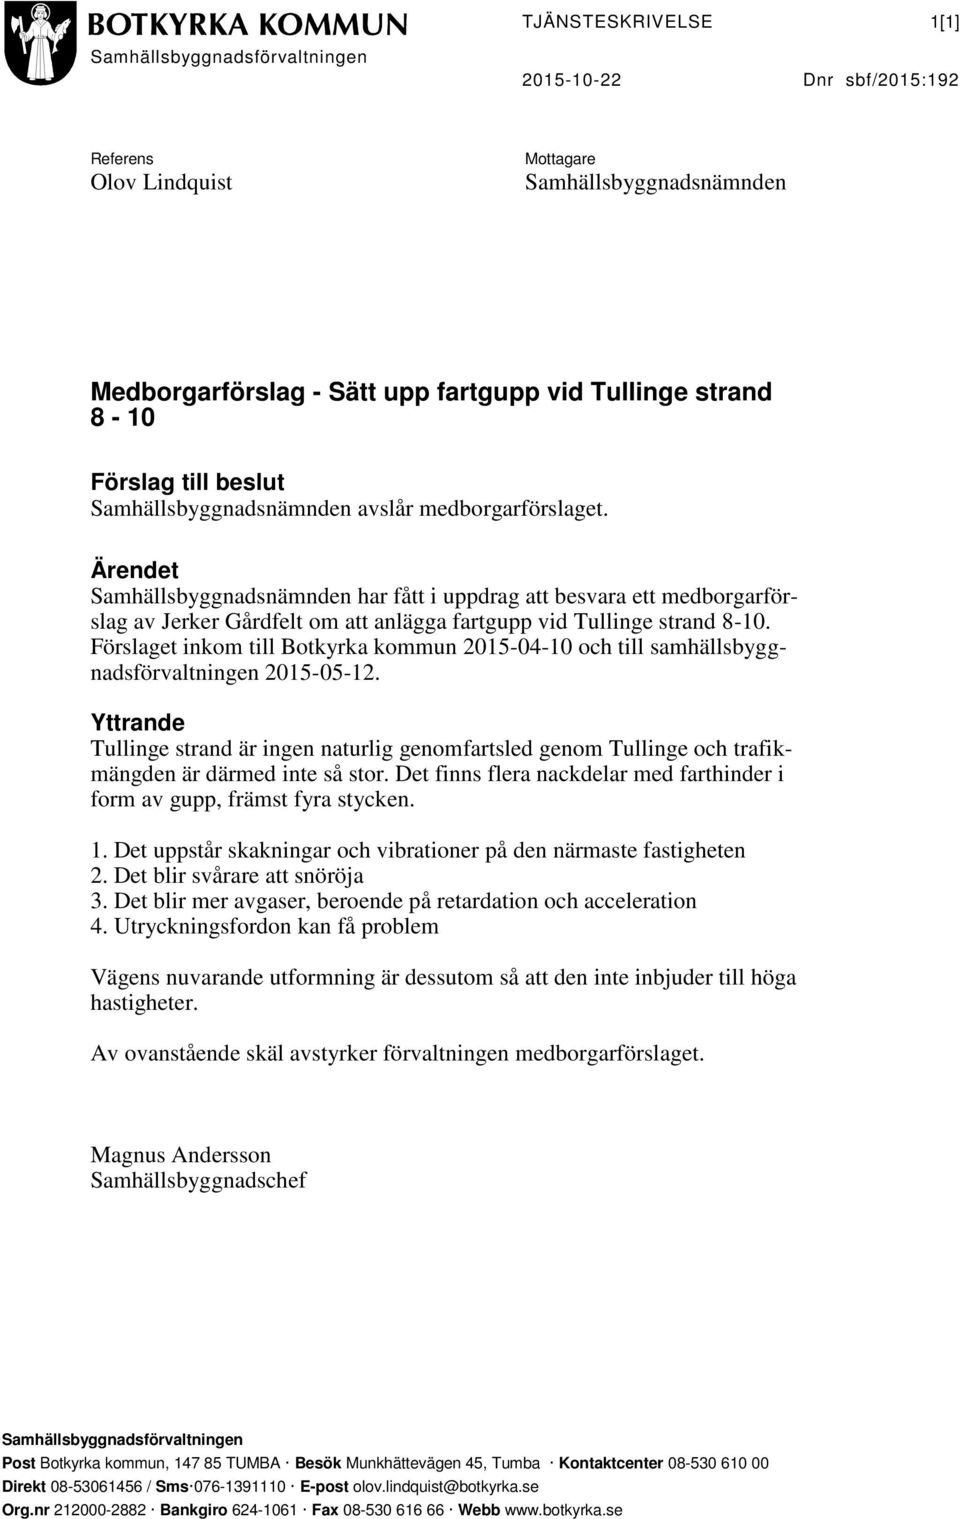 Ärendet Samhällsbyggnadsnämnden har fått i uppdrag att besvara ett medborgarförslag av Jerker Gårdfelt om att anlägga fartgupp vid Tullinge strand 8-10.